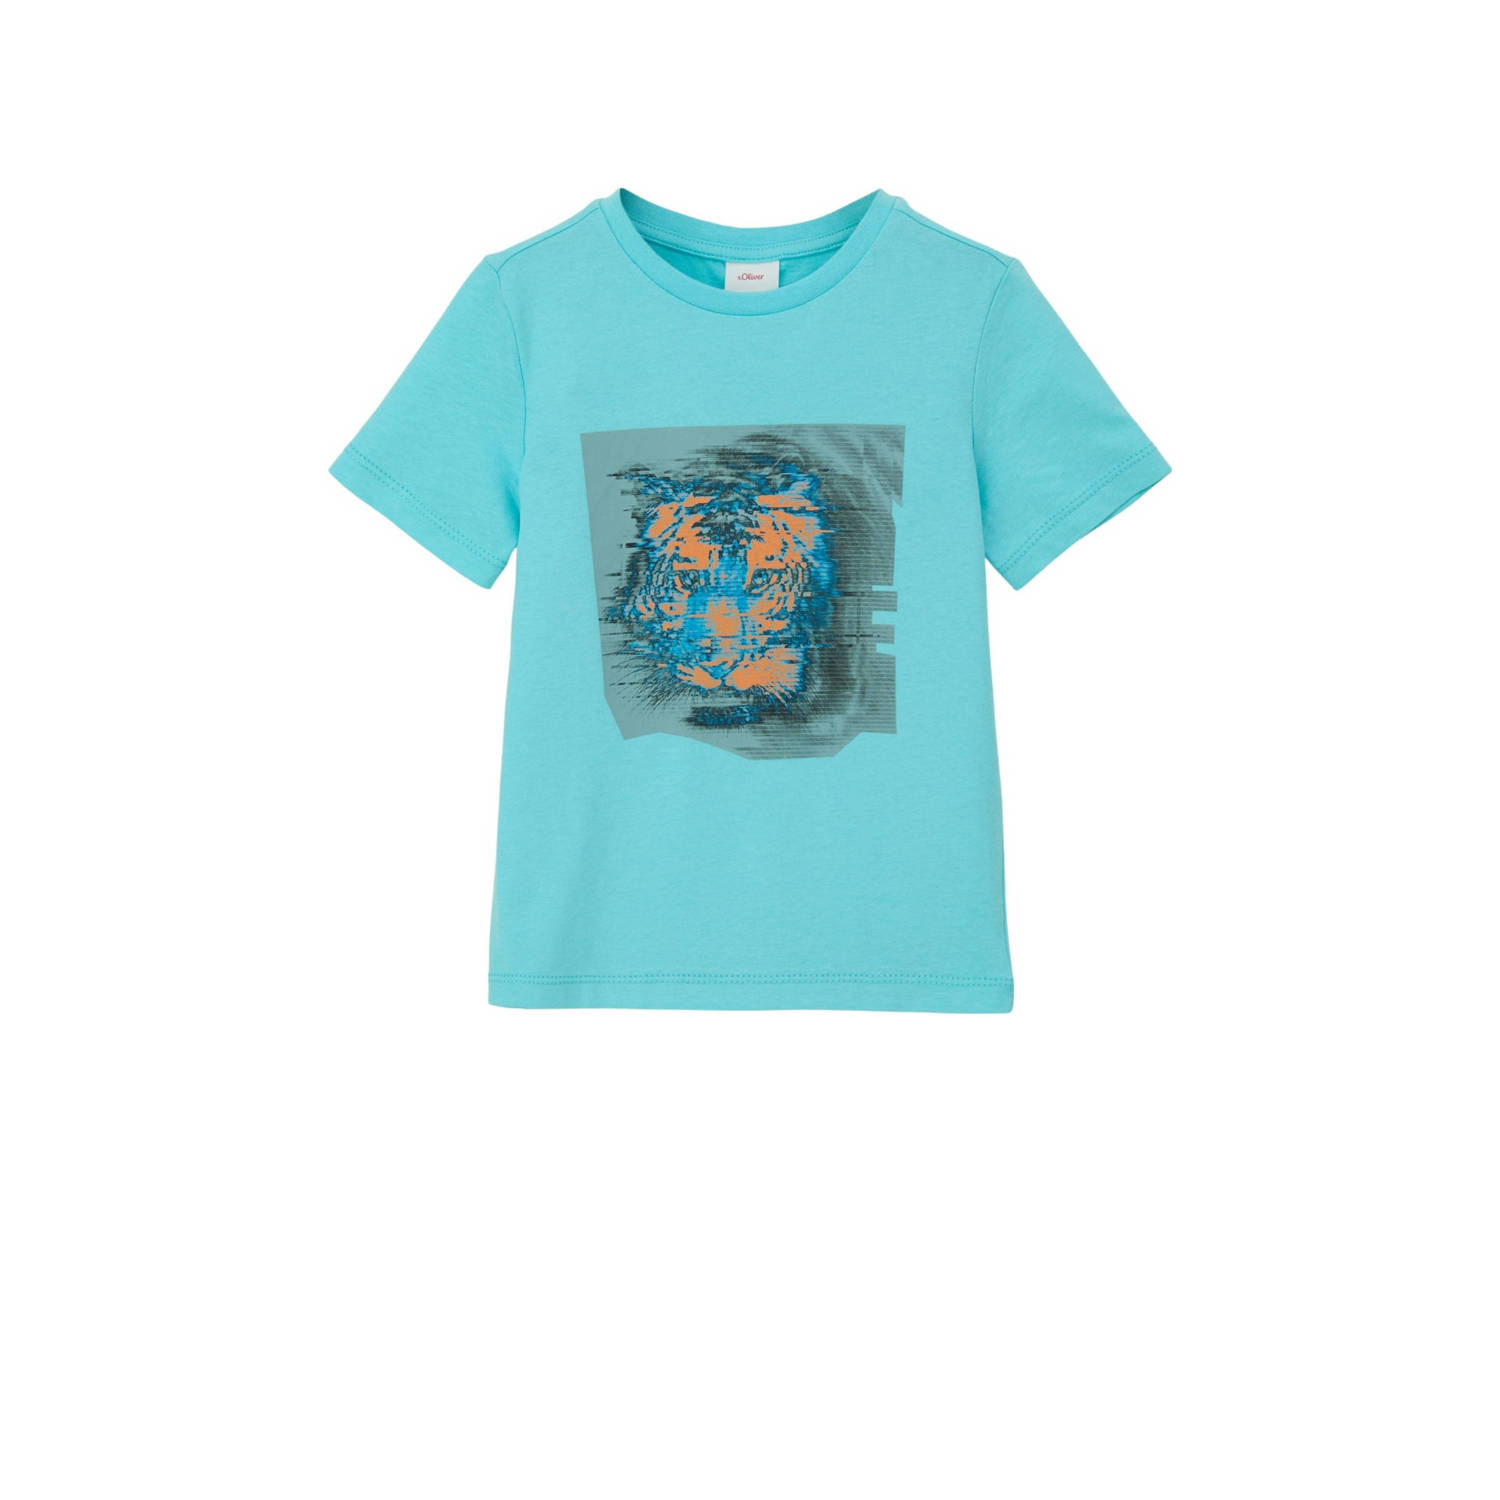 S.Oliver T-shirt met printopdruk blauw Katoen Ronde hals Printopdruk 128 134